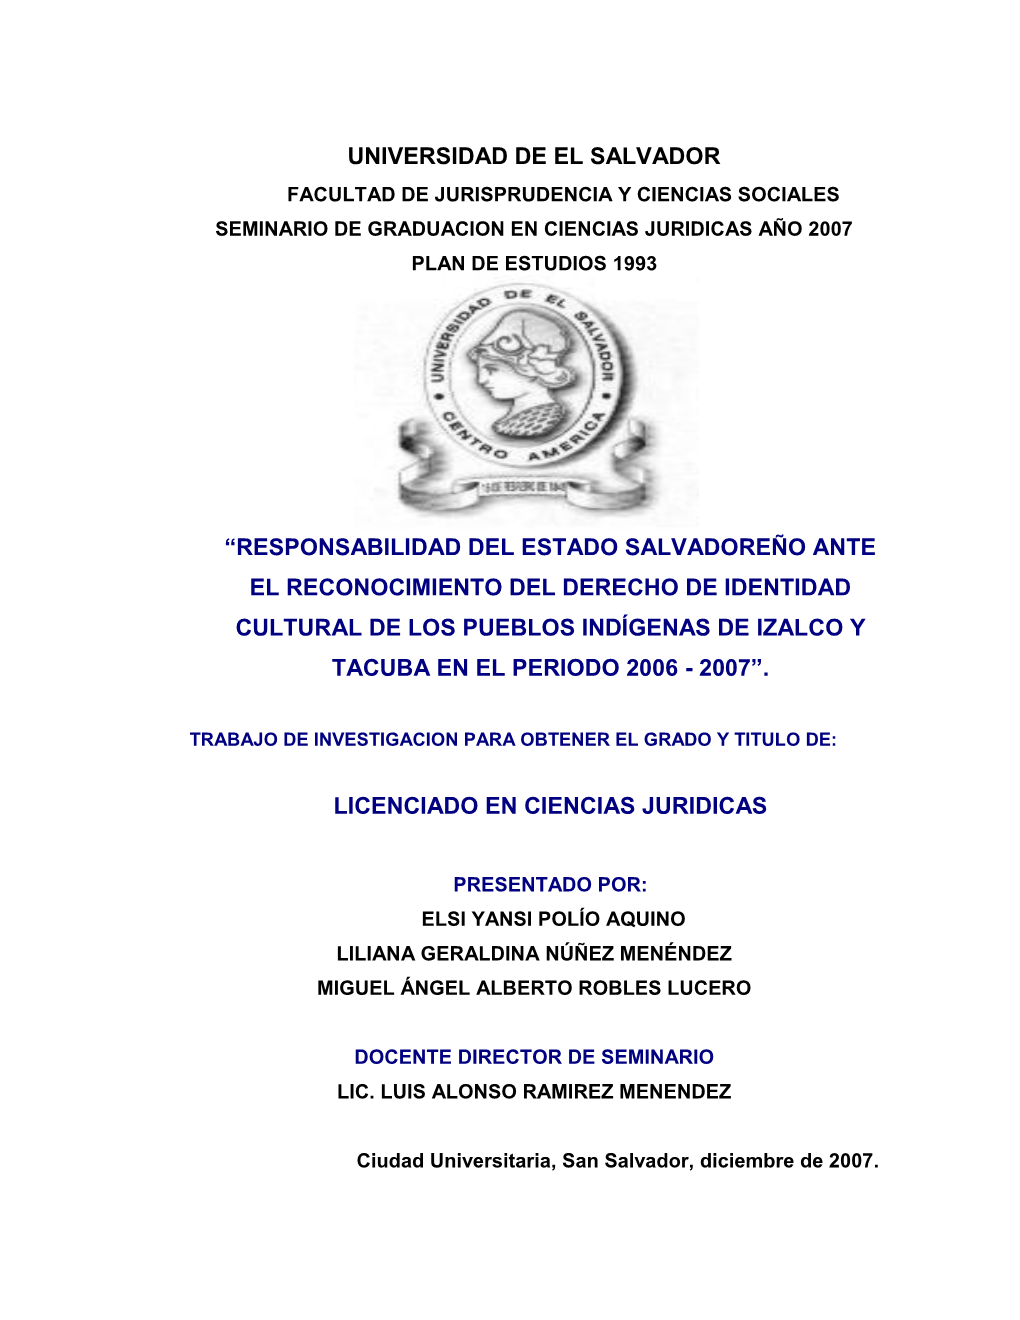 Capitulo I “Cultura Y Población Indígena En El Salvador”